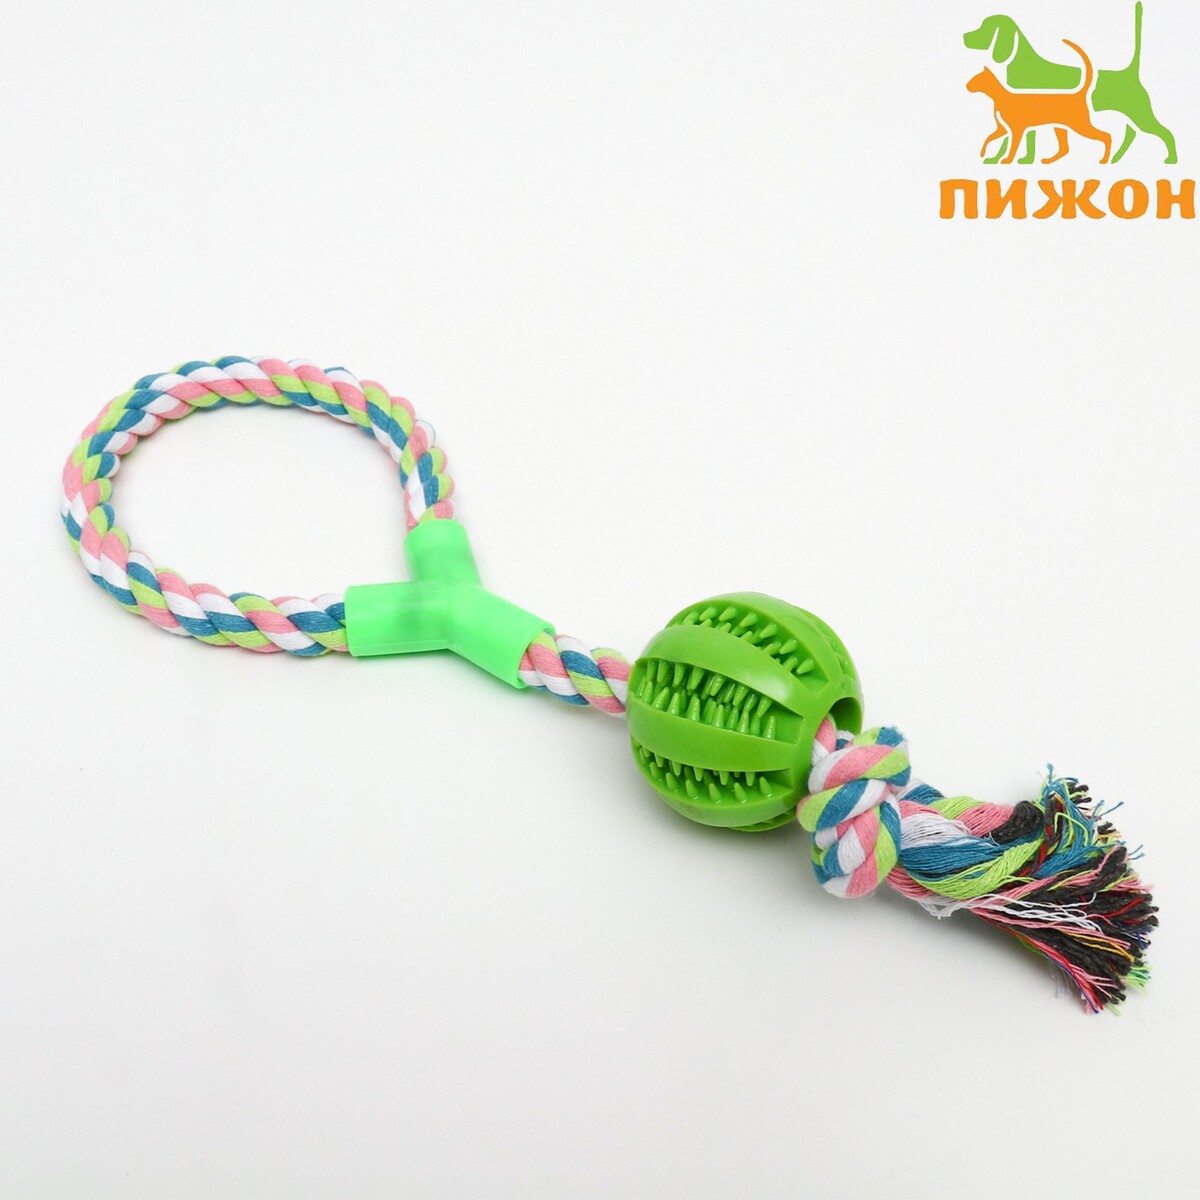 Игрушка канатная с ручкой и мячом, 38 см, до 160 г, зеленая игрушка тренировочная канатная до 30 см 70 г белая зеленая красная